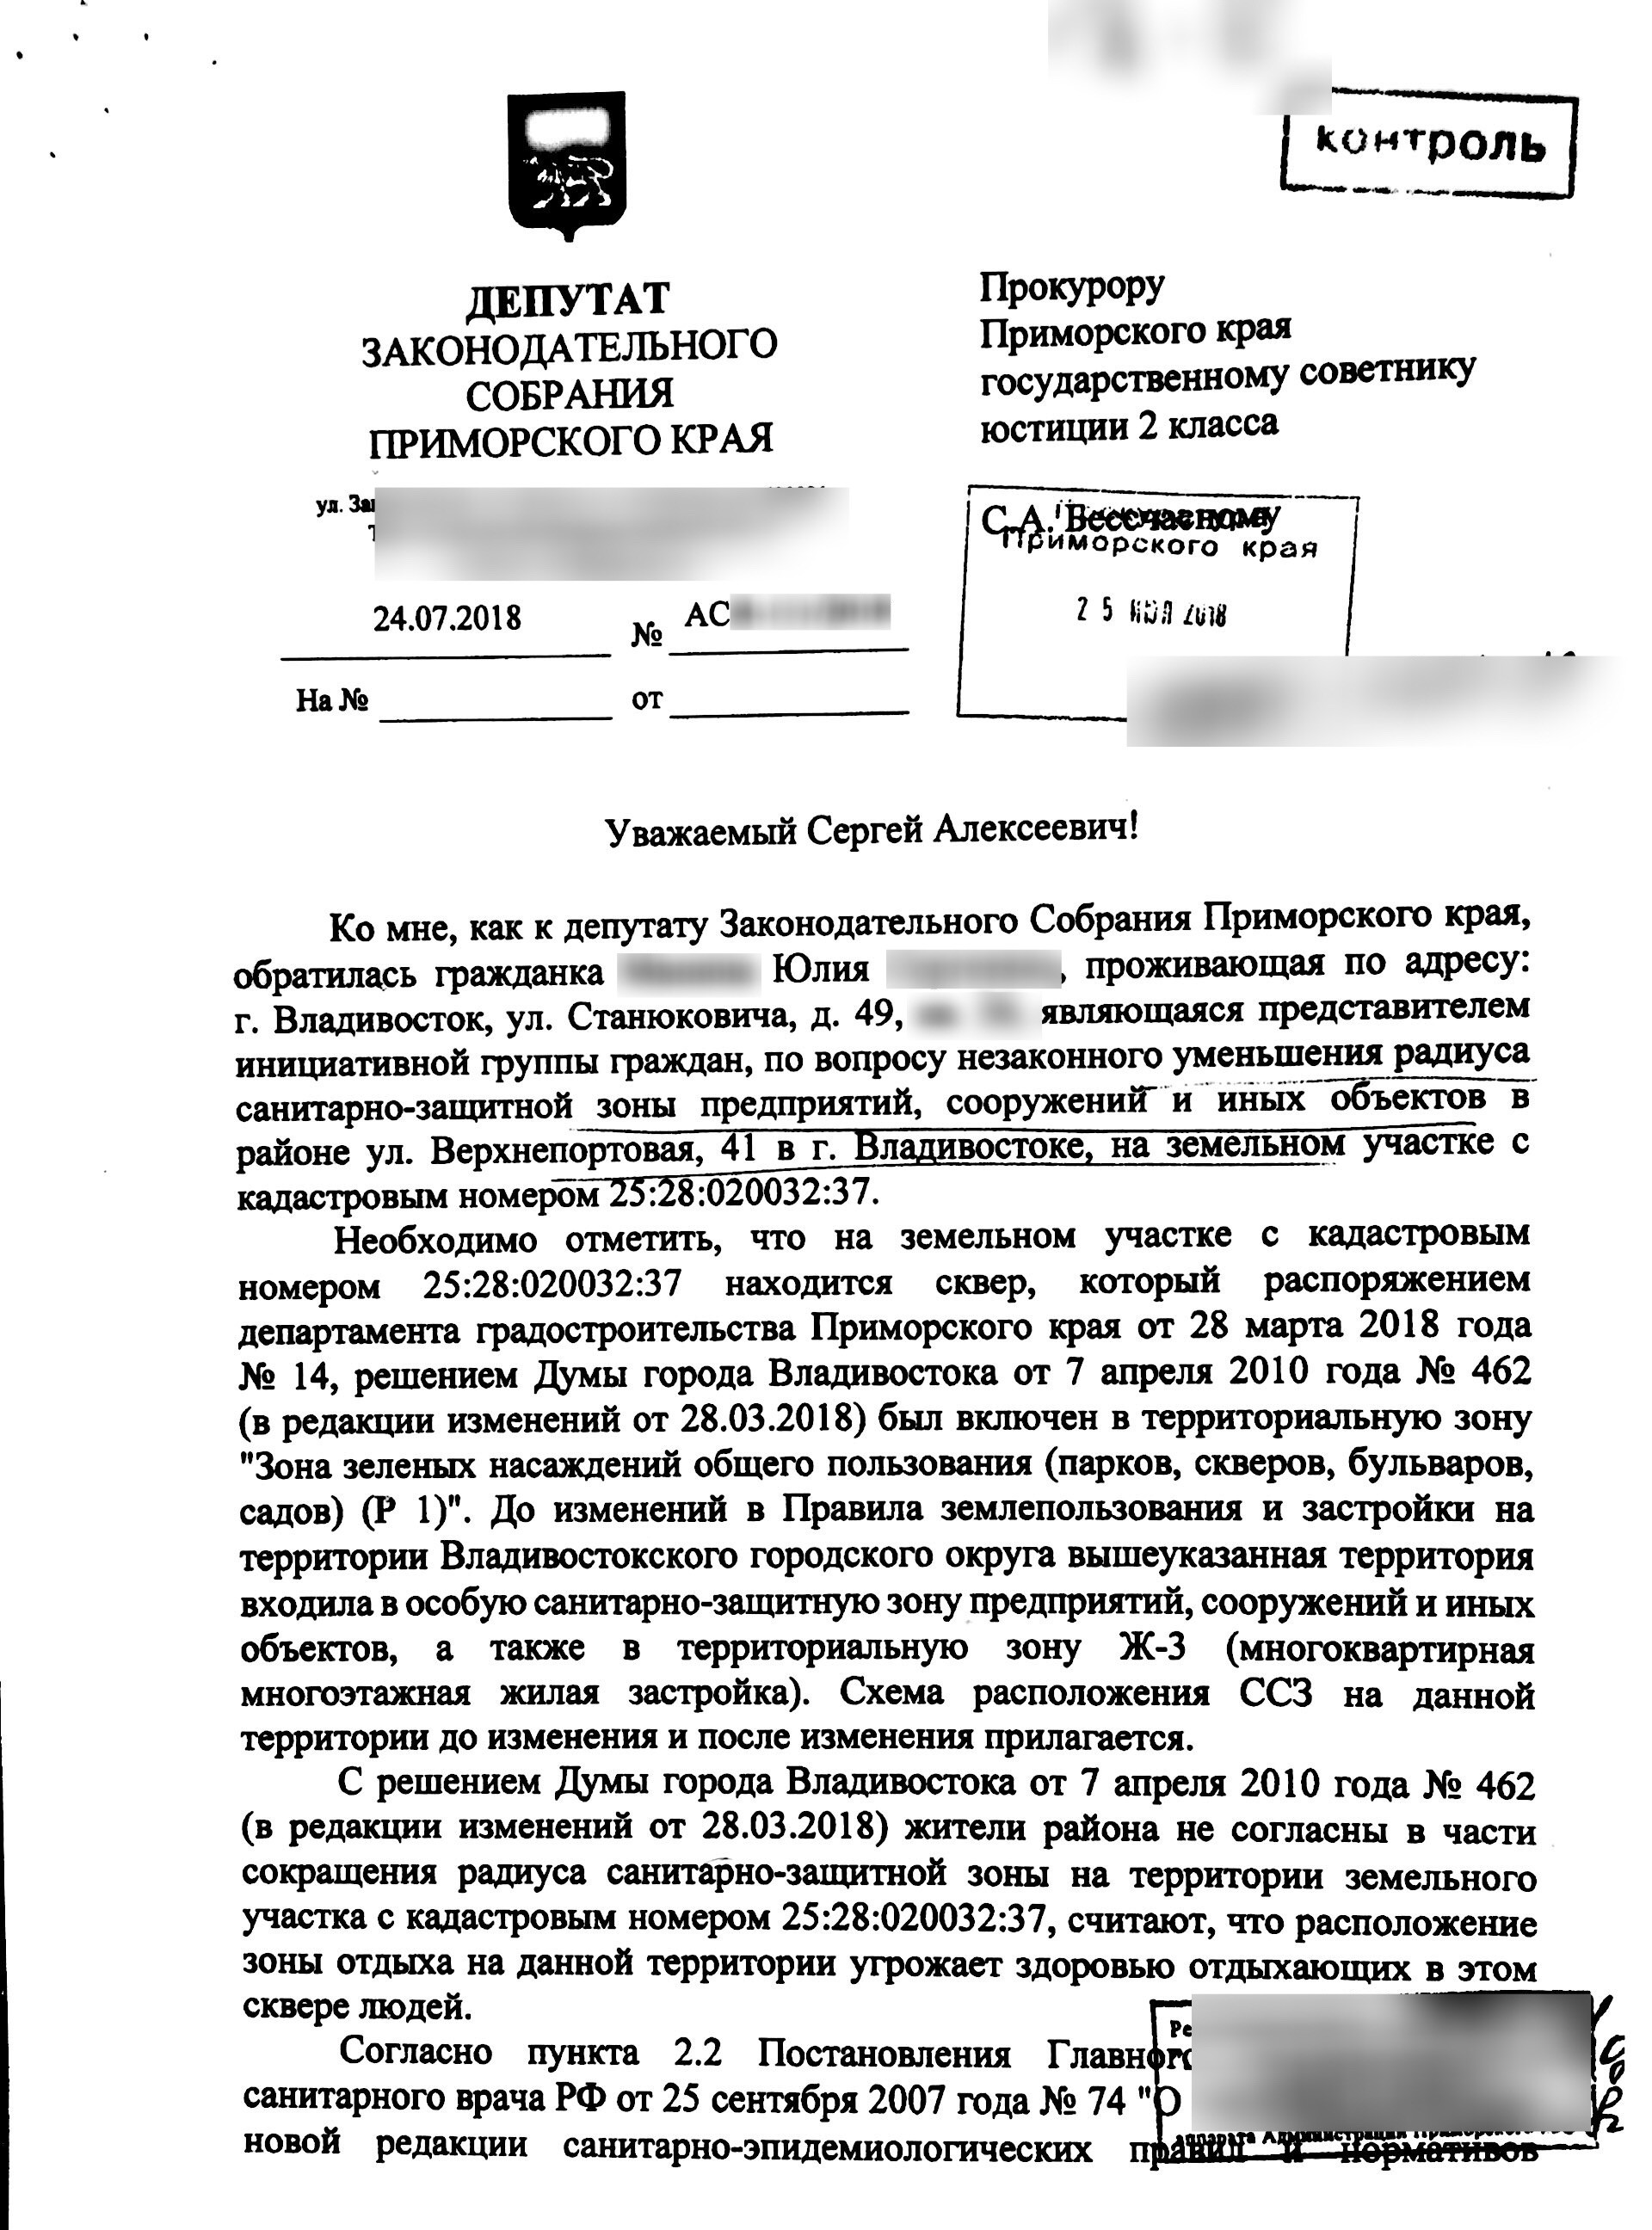 Титульный лист запроса Ищенко в прокуратуру. Фото: © L!FE